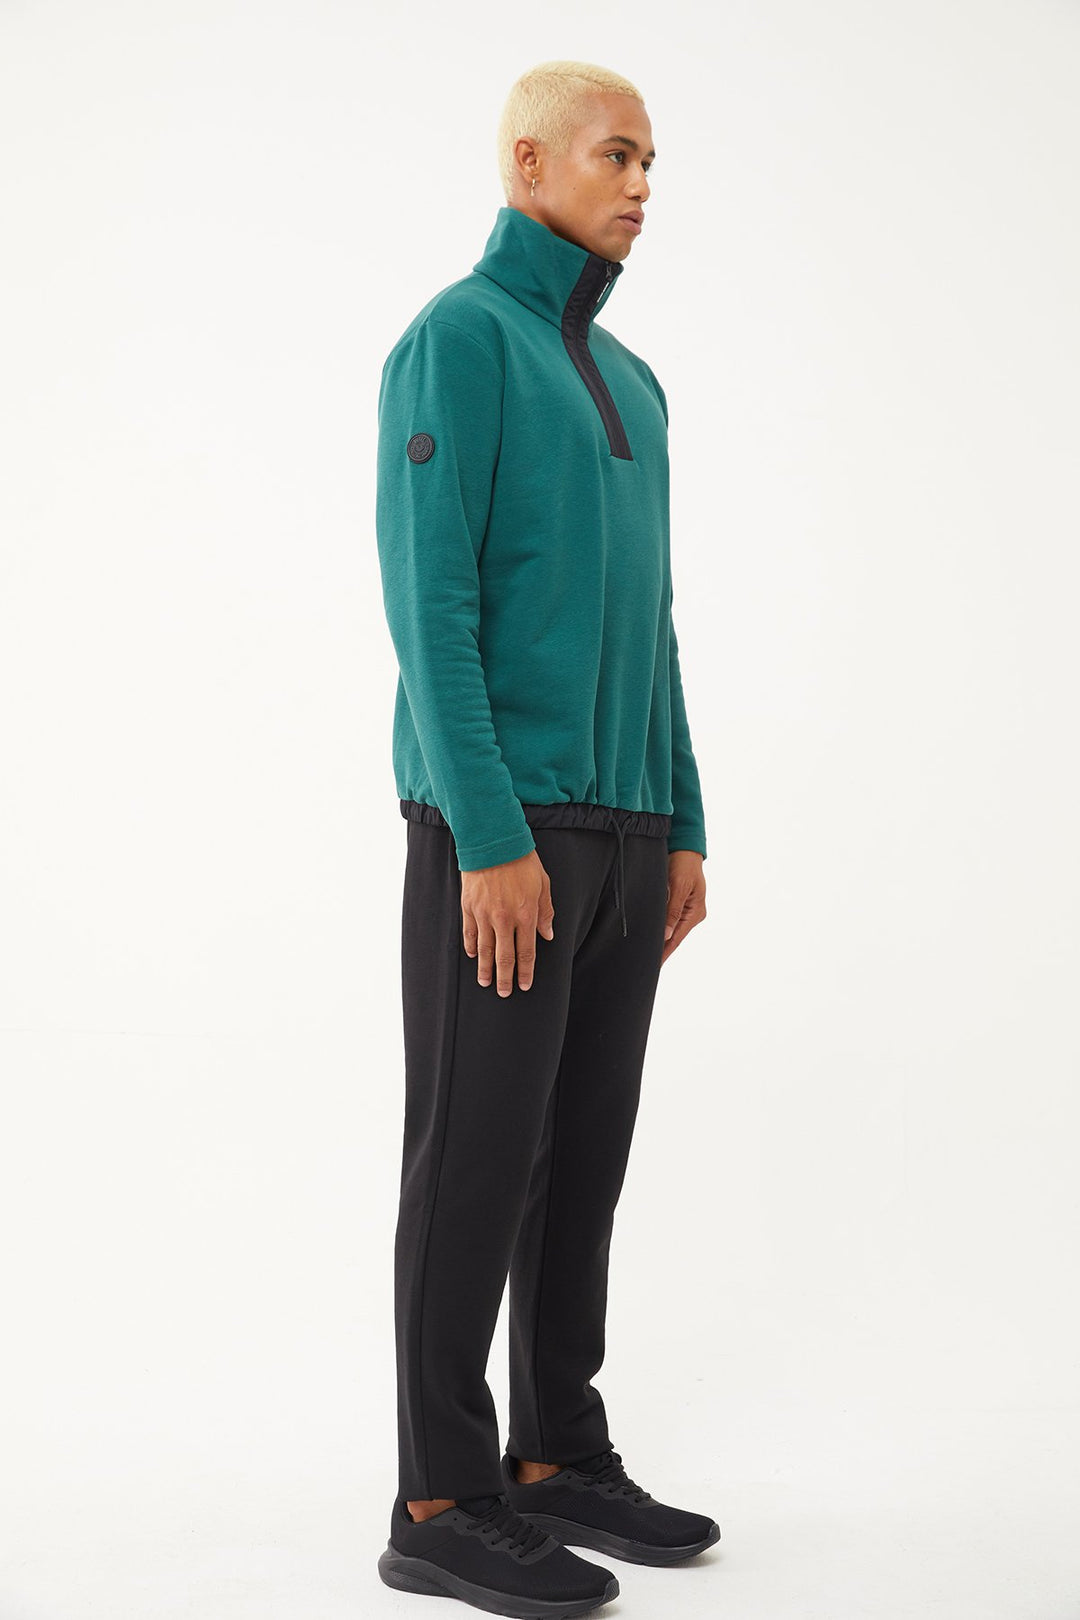 Herren-Sweatshirt-Trainingsanzug mit halbem Reißverschluss